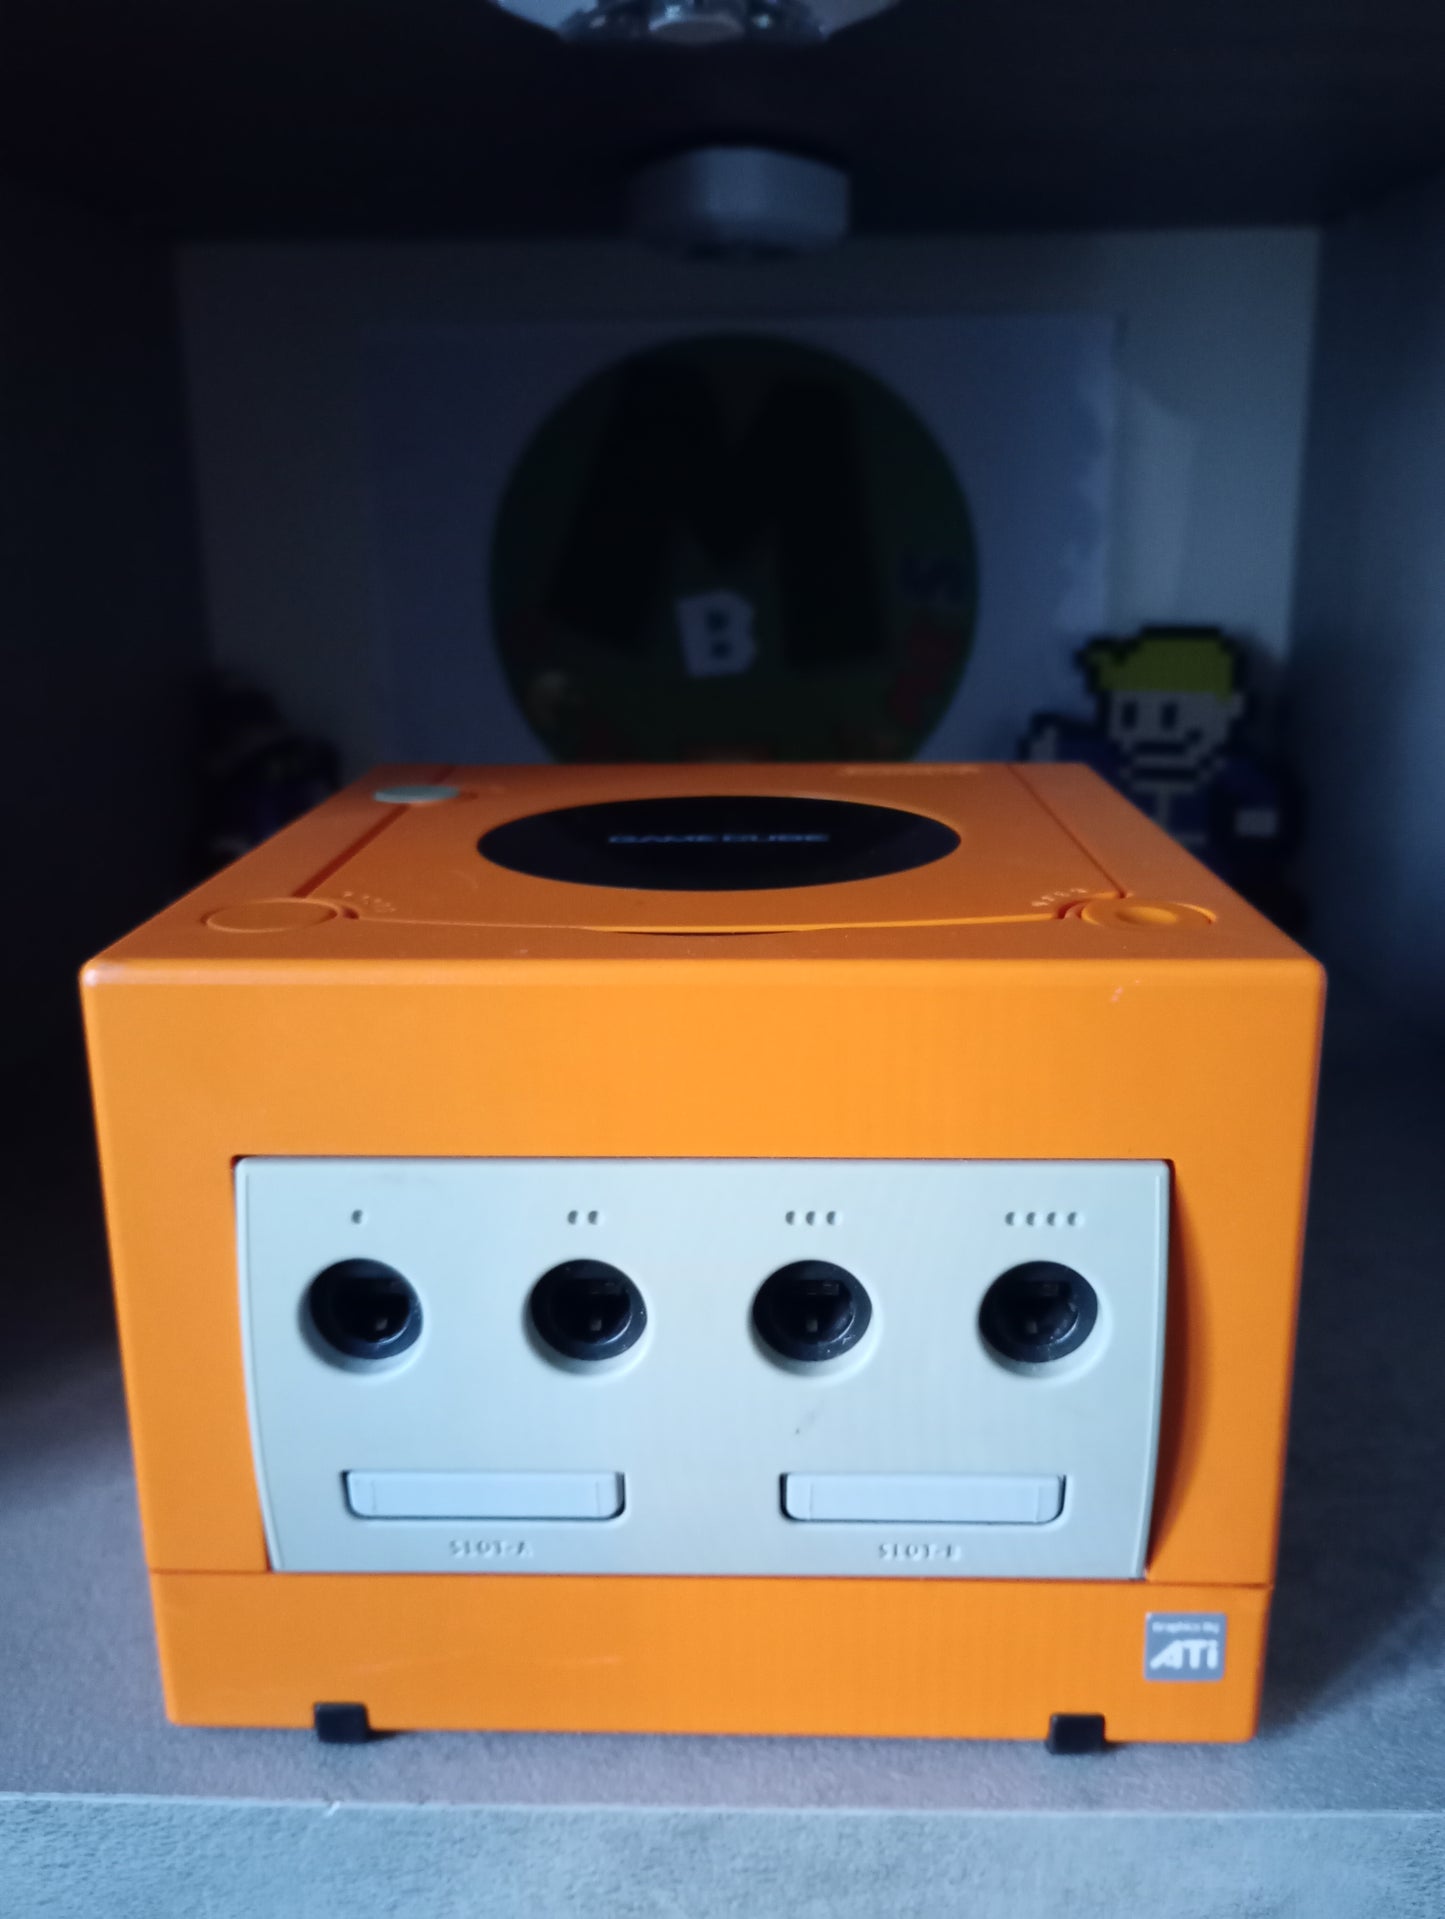 Gamecube Orange (JAP)